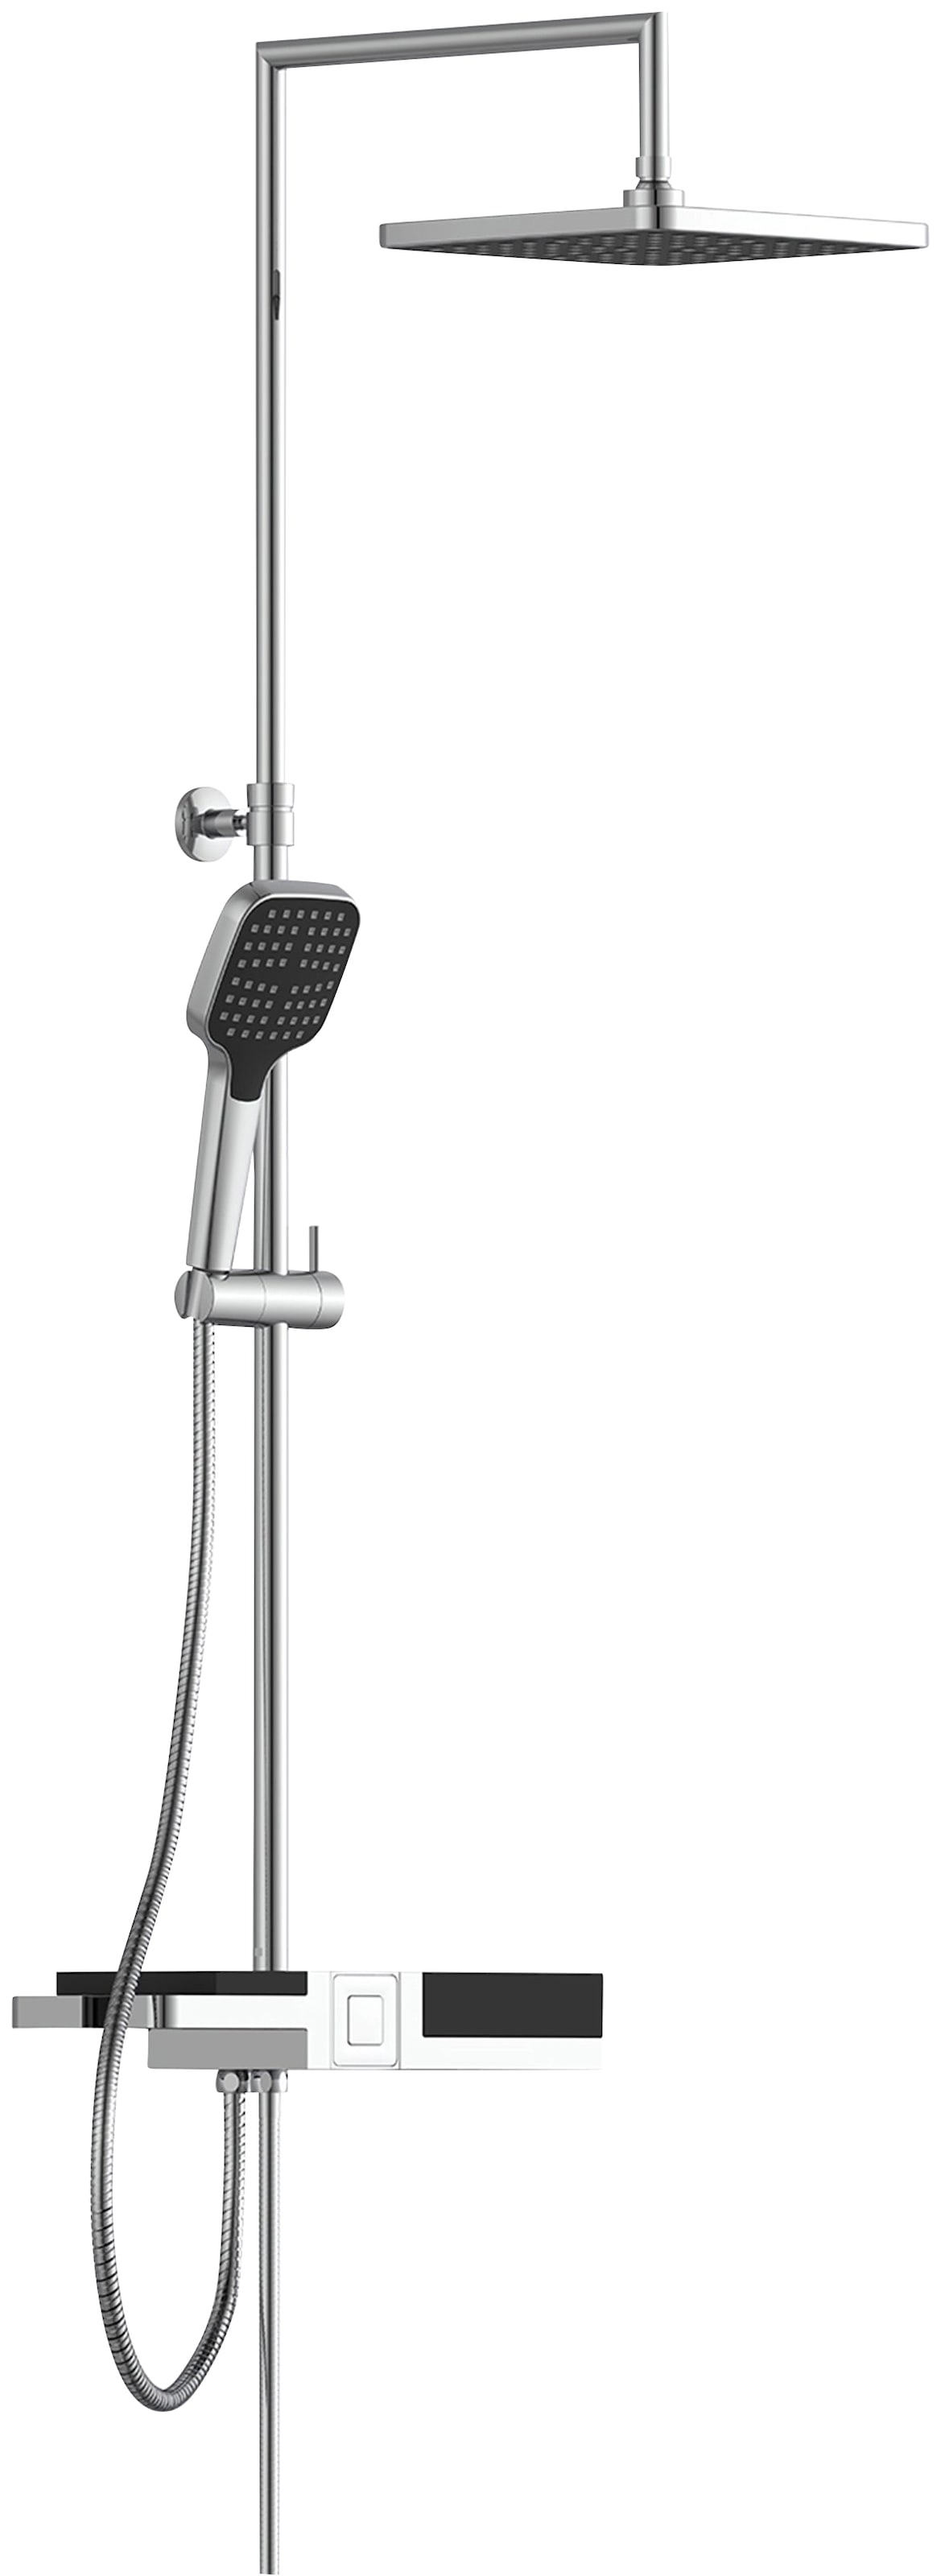 Schütte Duschsystem "BLUEPERL", Duschsystem mit Regendusche und modularem Ablagesystem, Duschbrause